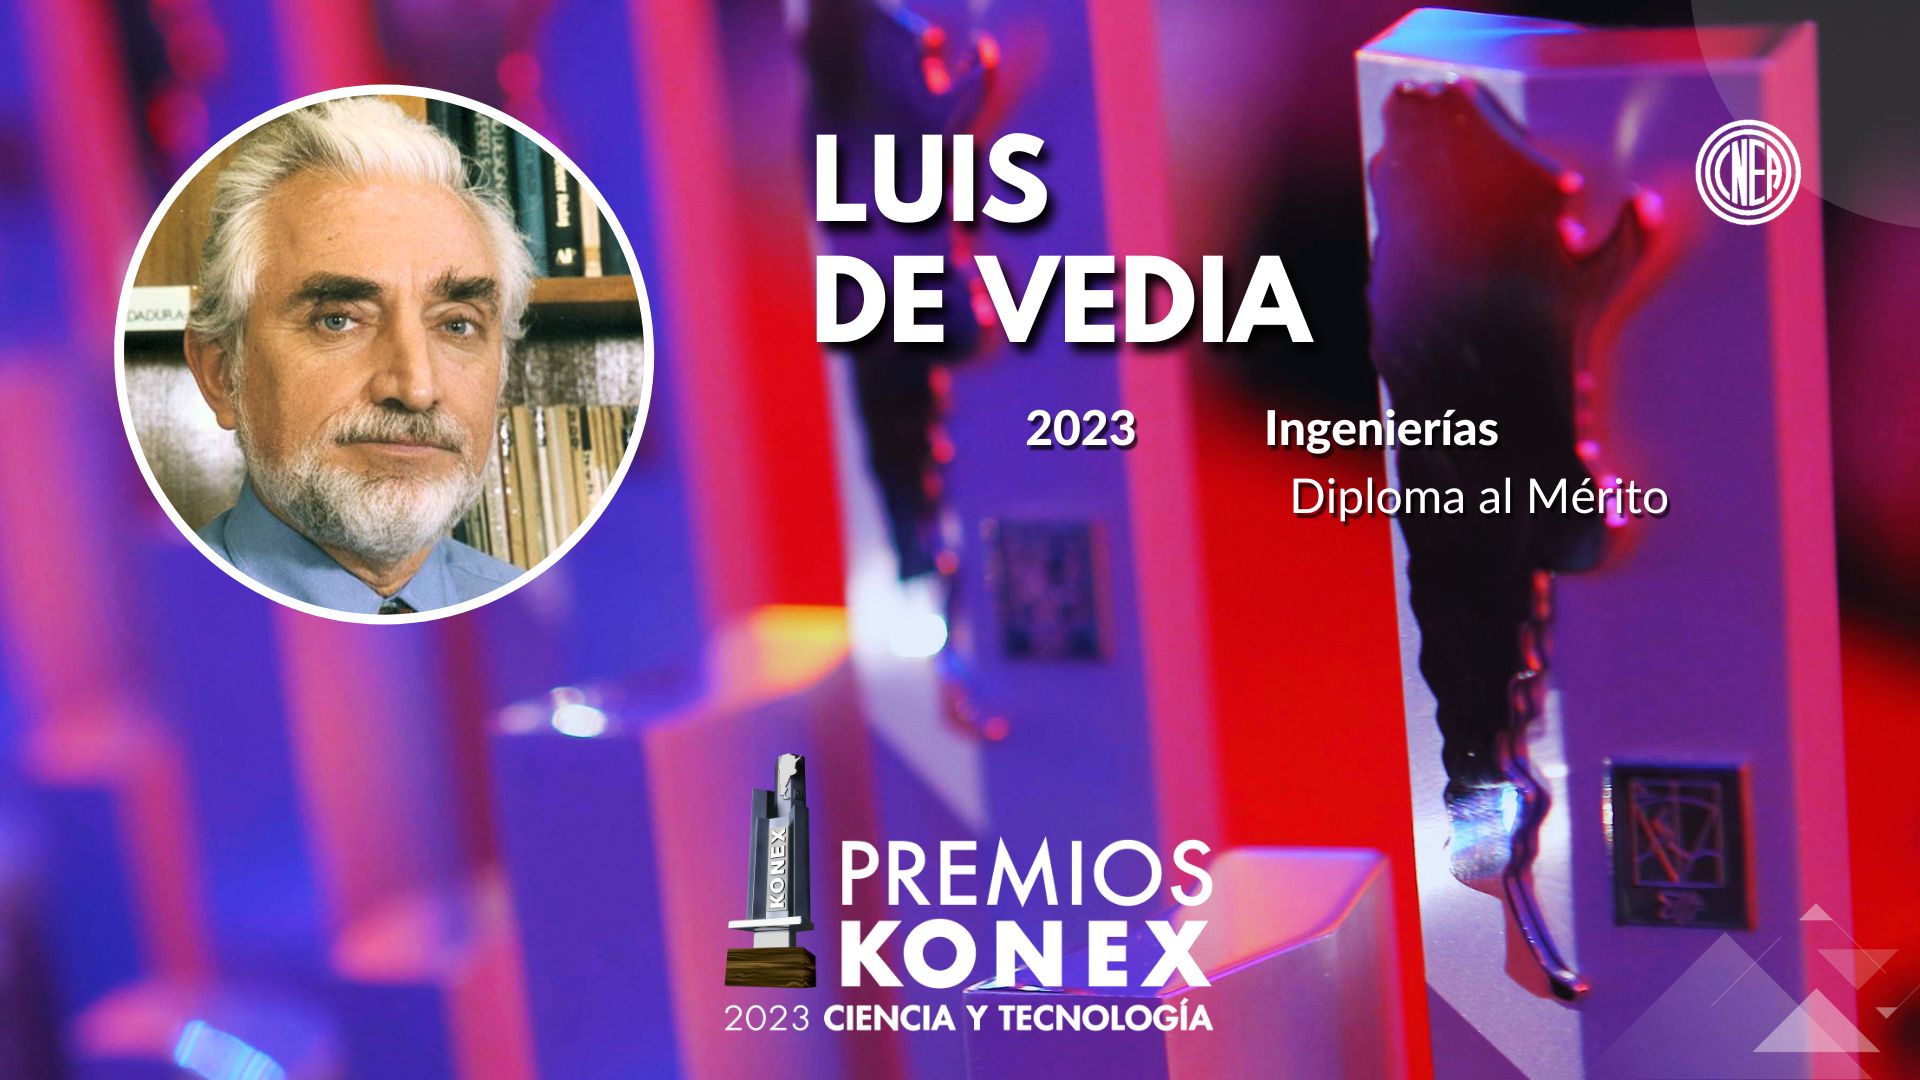 Luis de Vedia